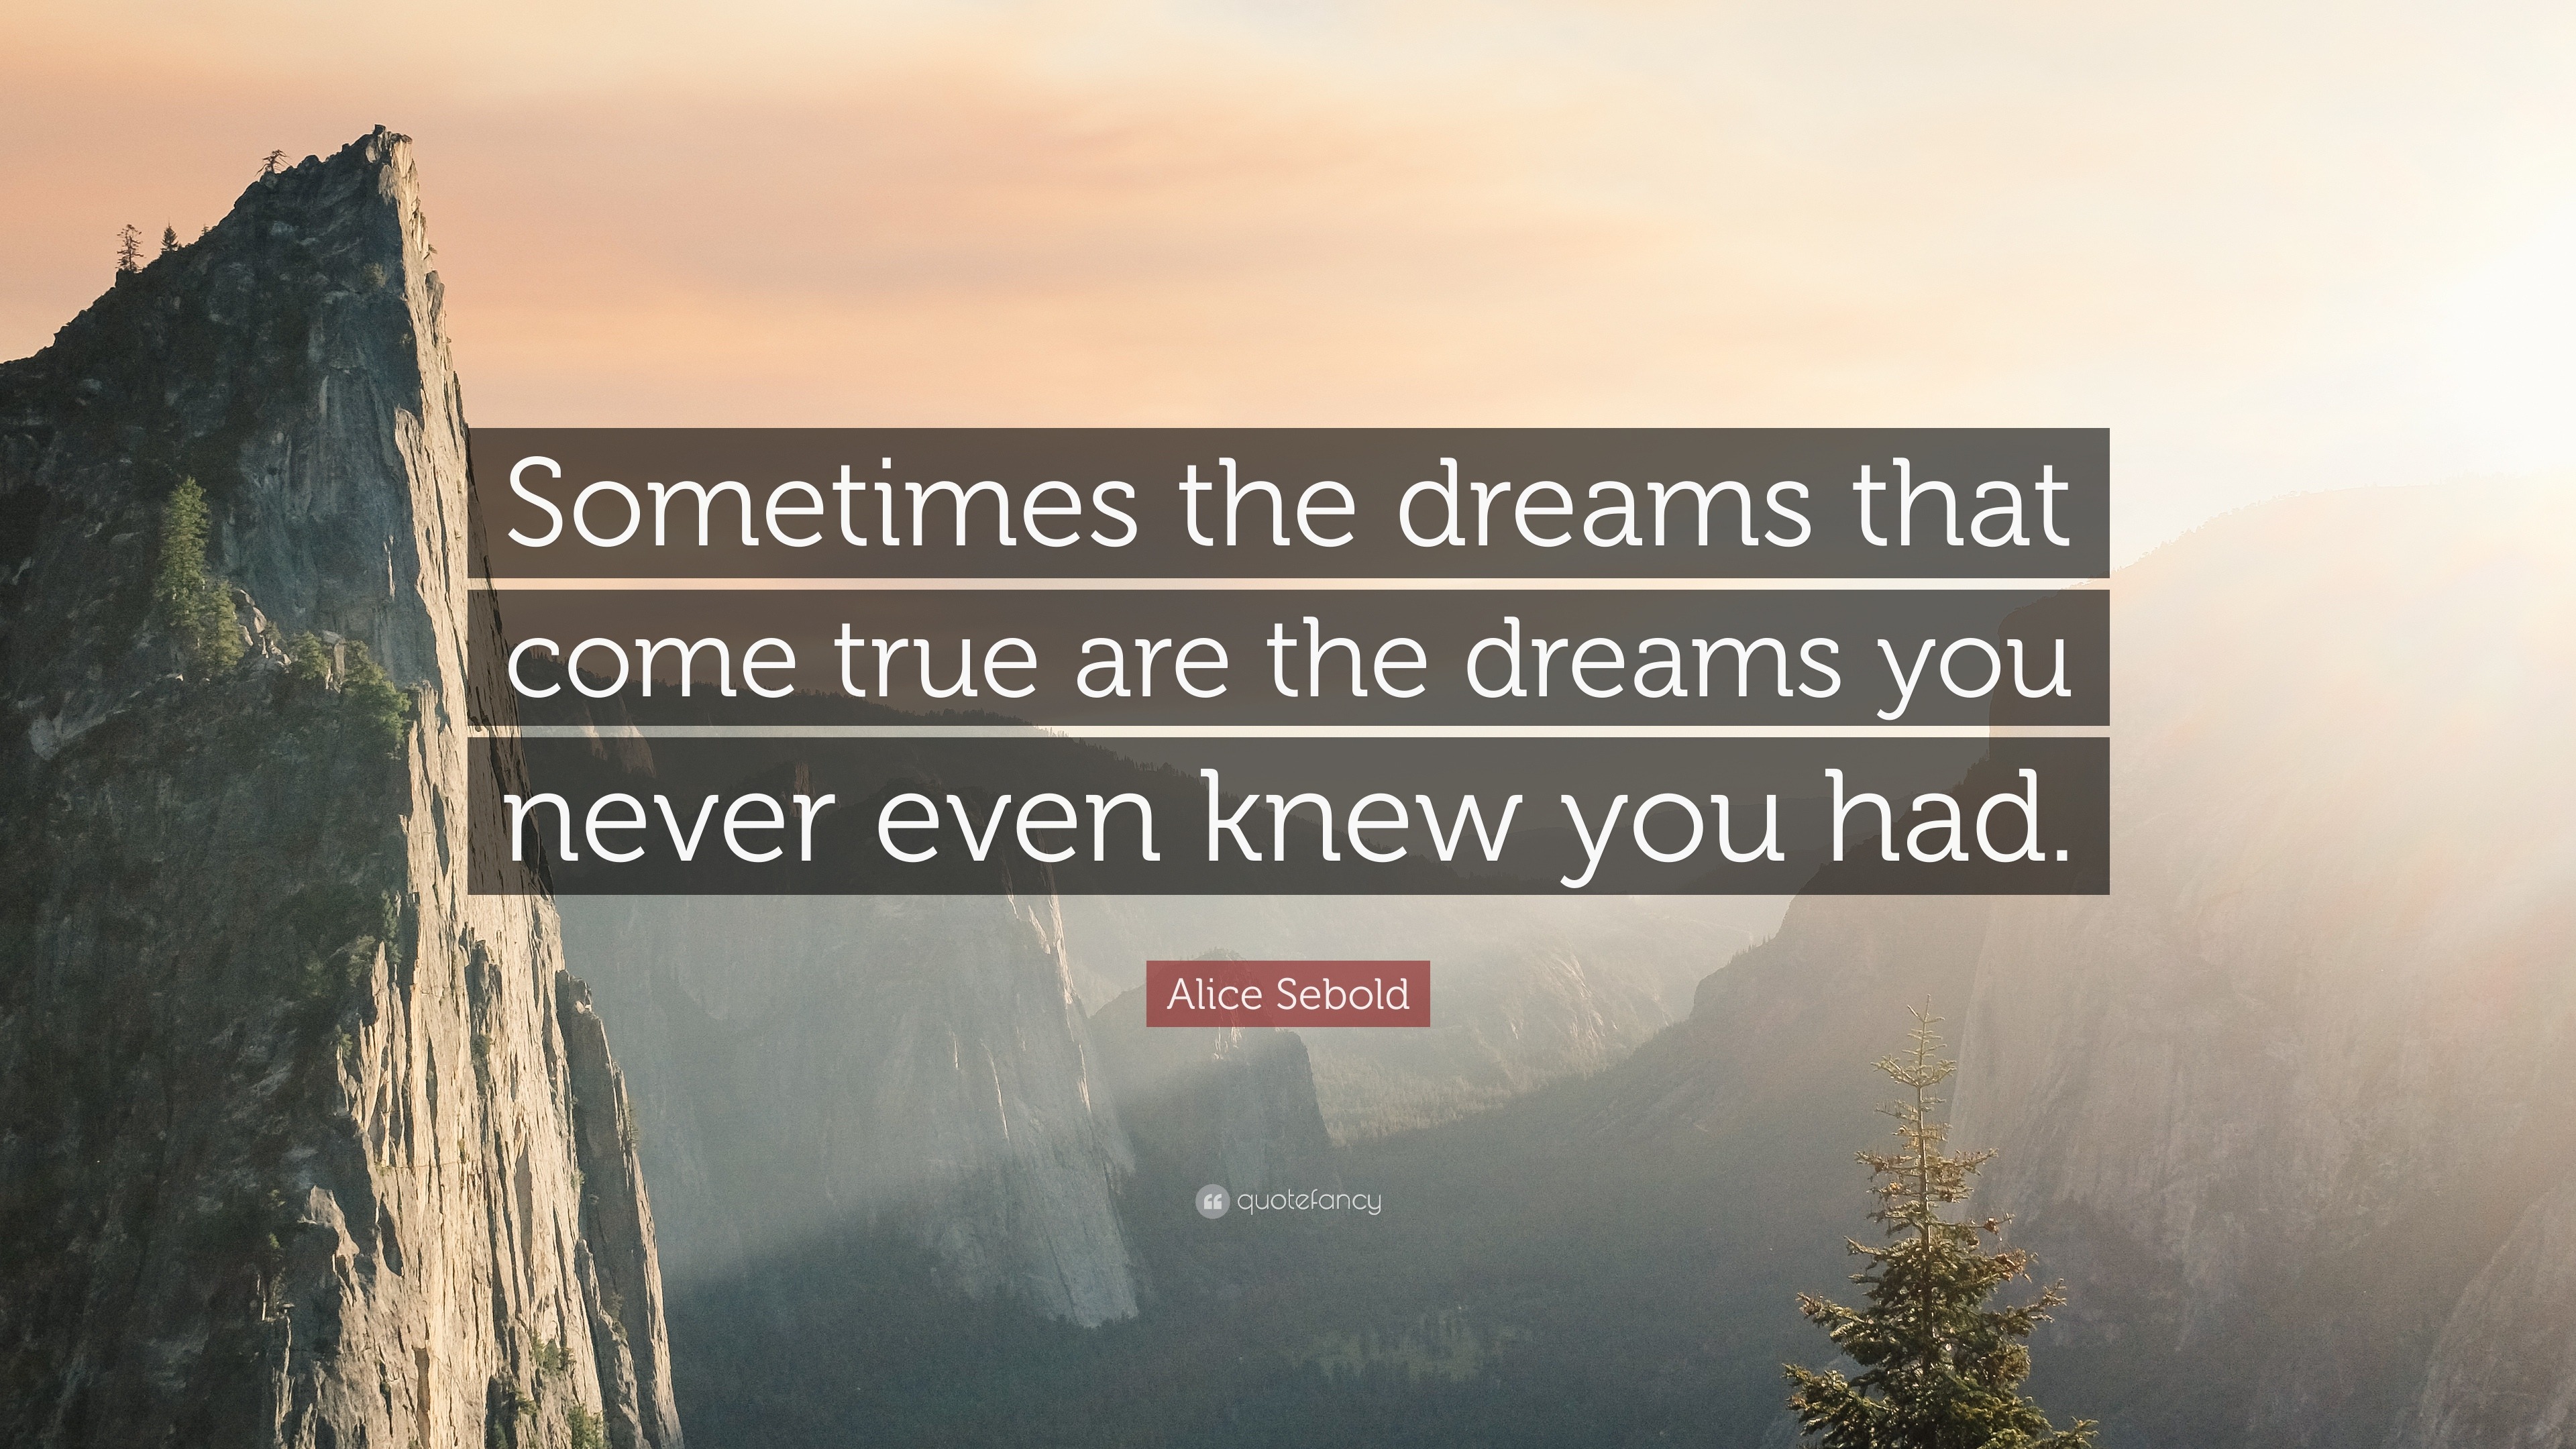 Alice Sebold Quote “sometimes The Dreams That Come True Are The Dreams